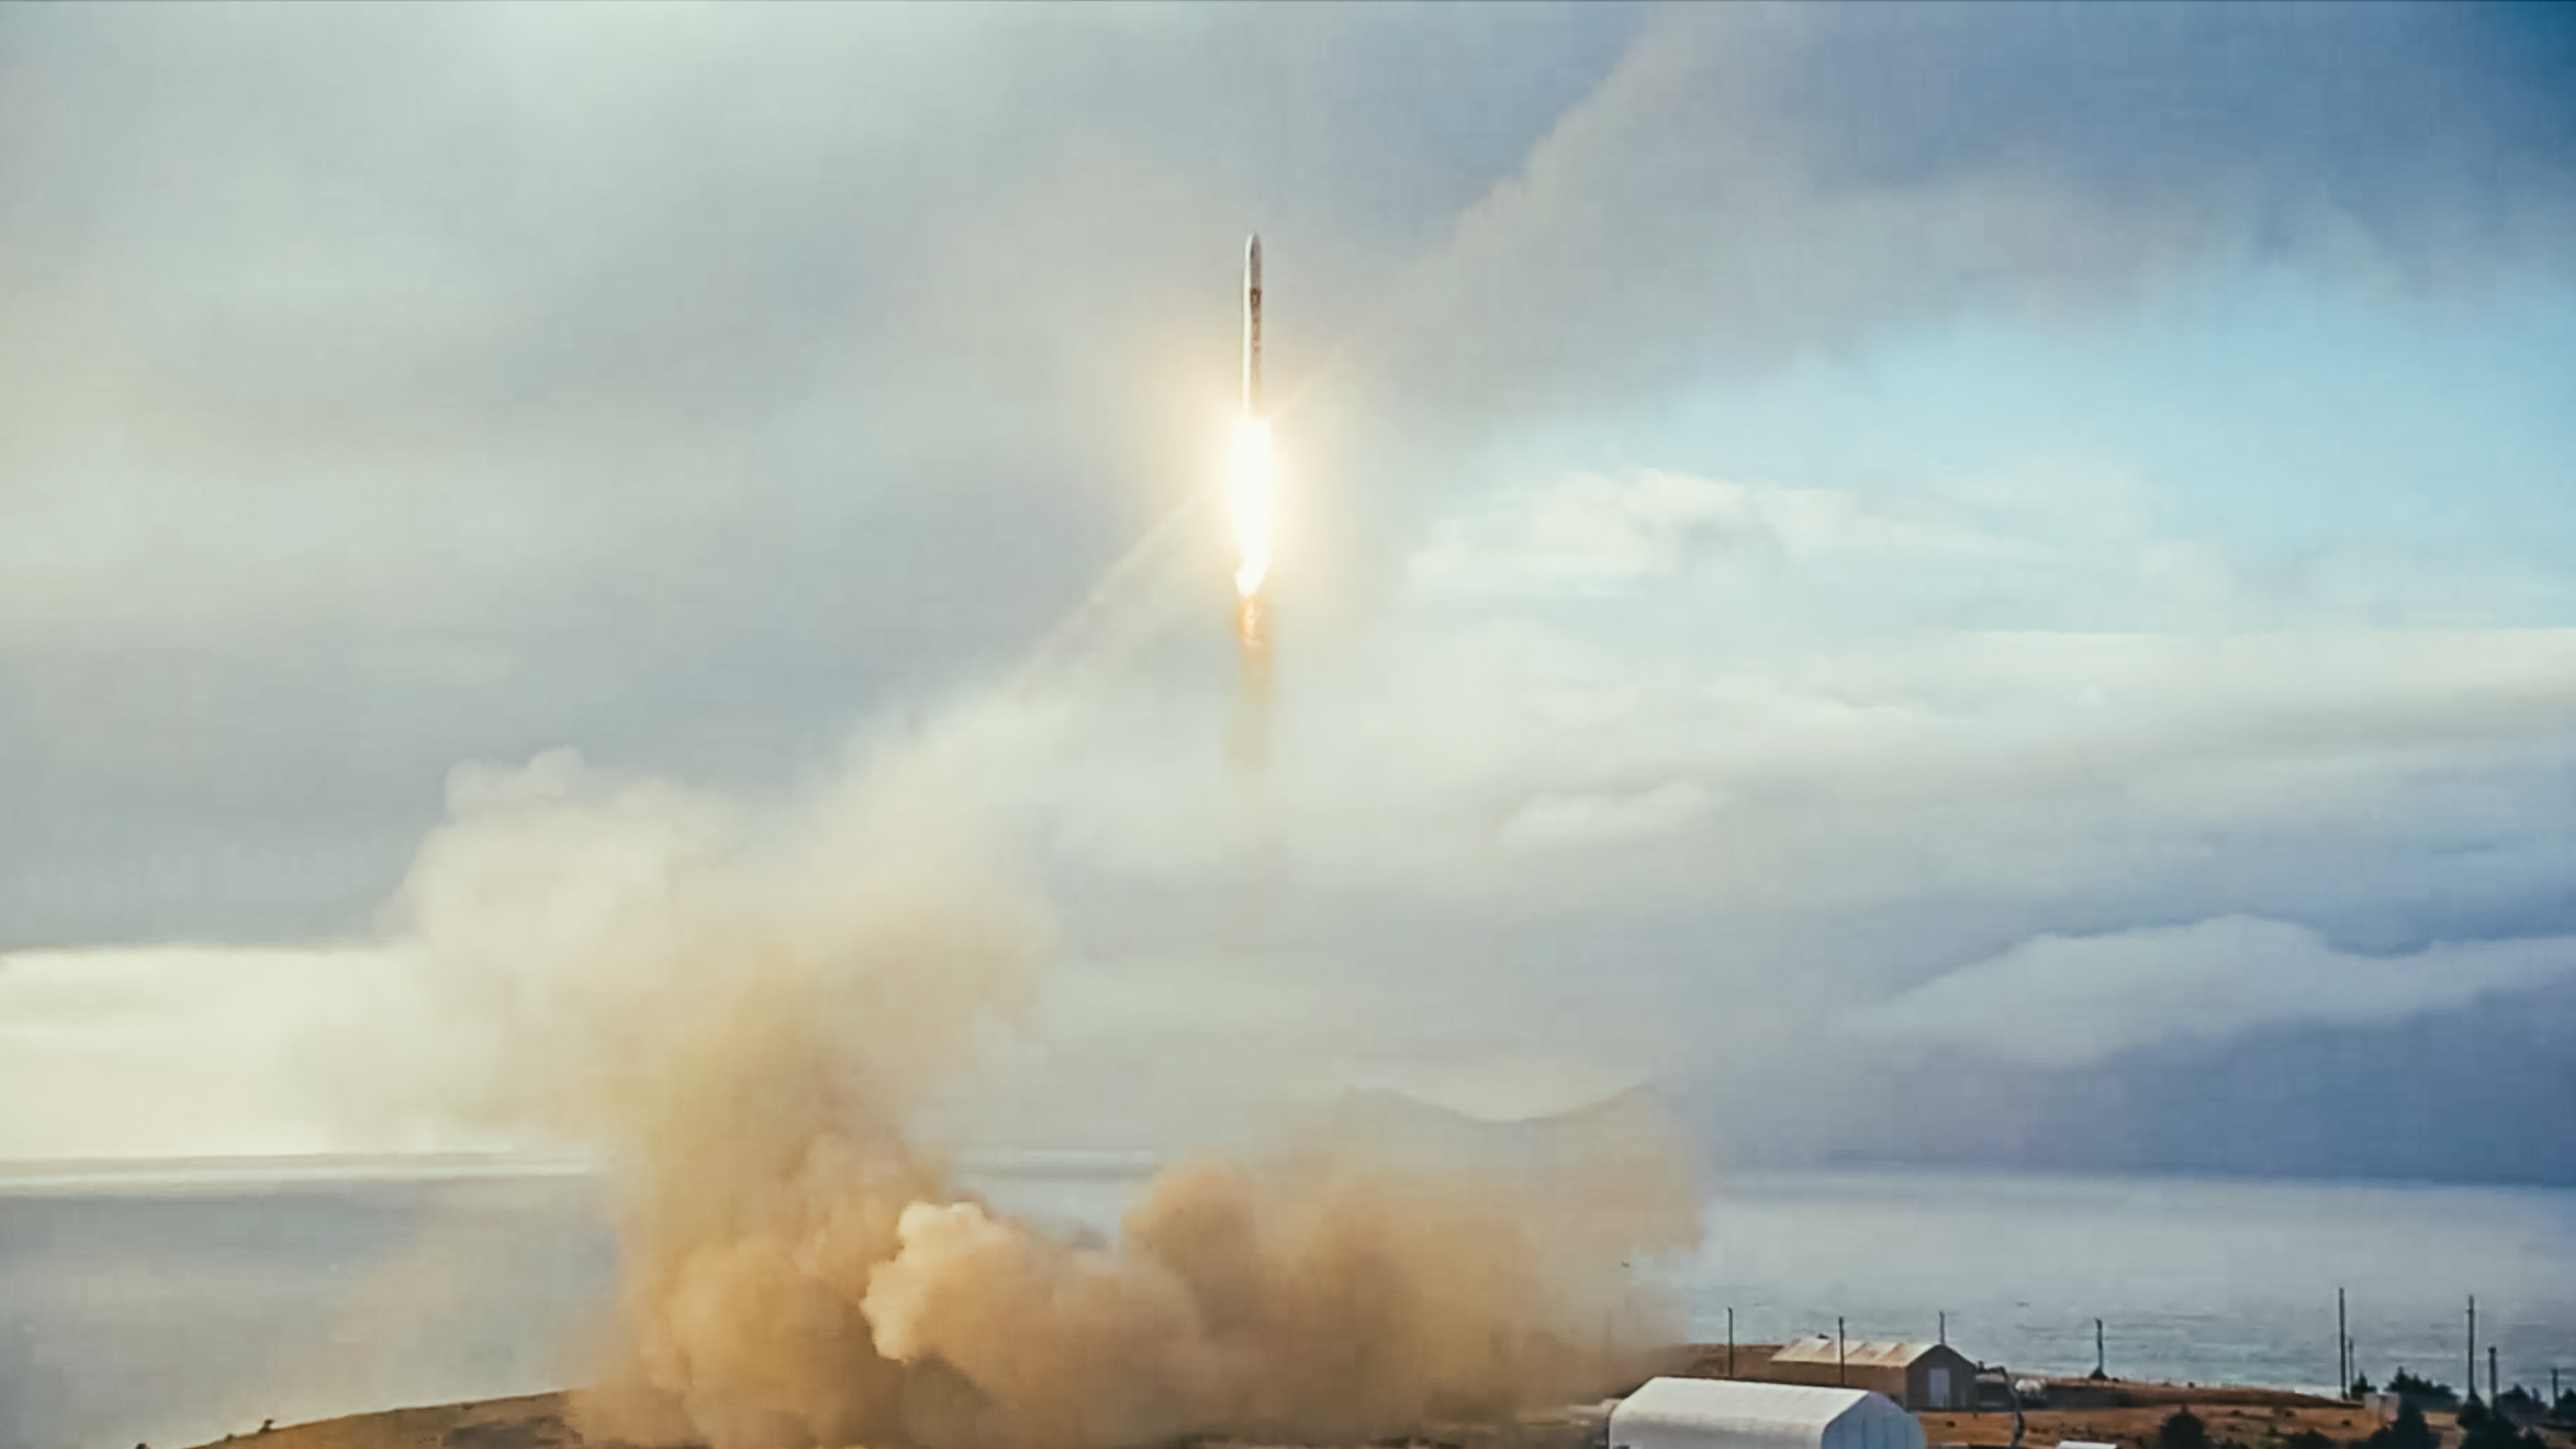 Erststart der RS1-Rakete endete mit Absturz und Feuer auf der Startrampe